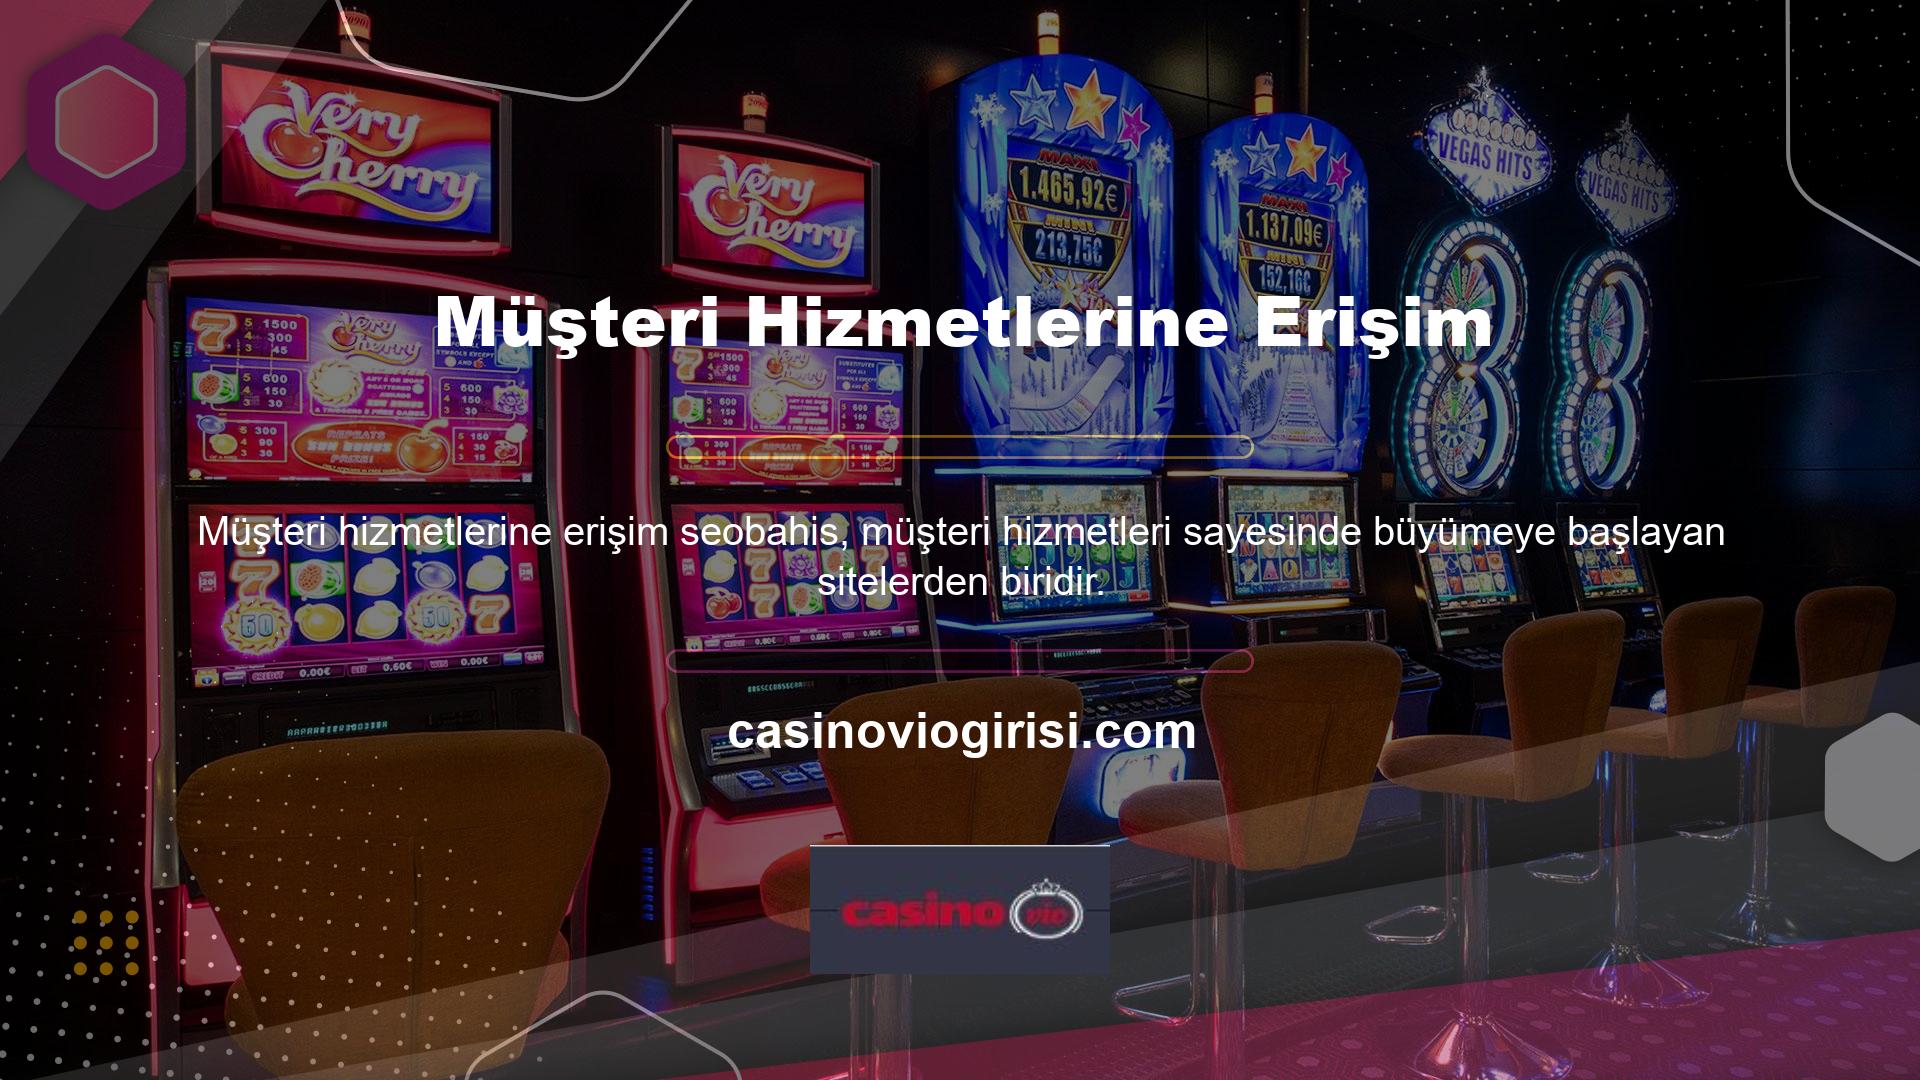 Casinovio Müşteri Hizmetleri, özellikle üyelerin genellikle zayıf iletişimden muzdarip olduğu casino endüstrisinde çeşitli alternatif kanallar aracılığıyla üyeleri desteklemektedir